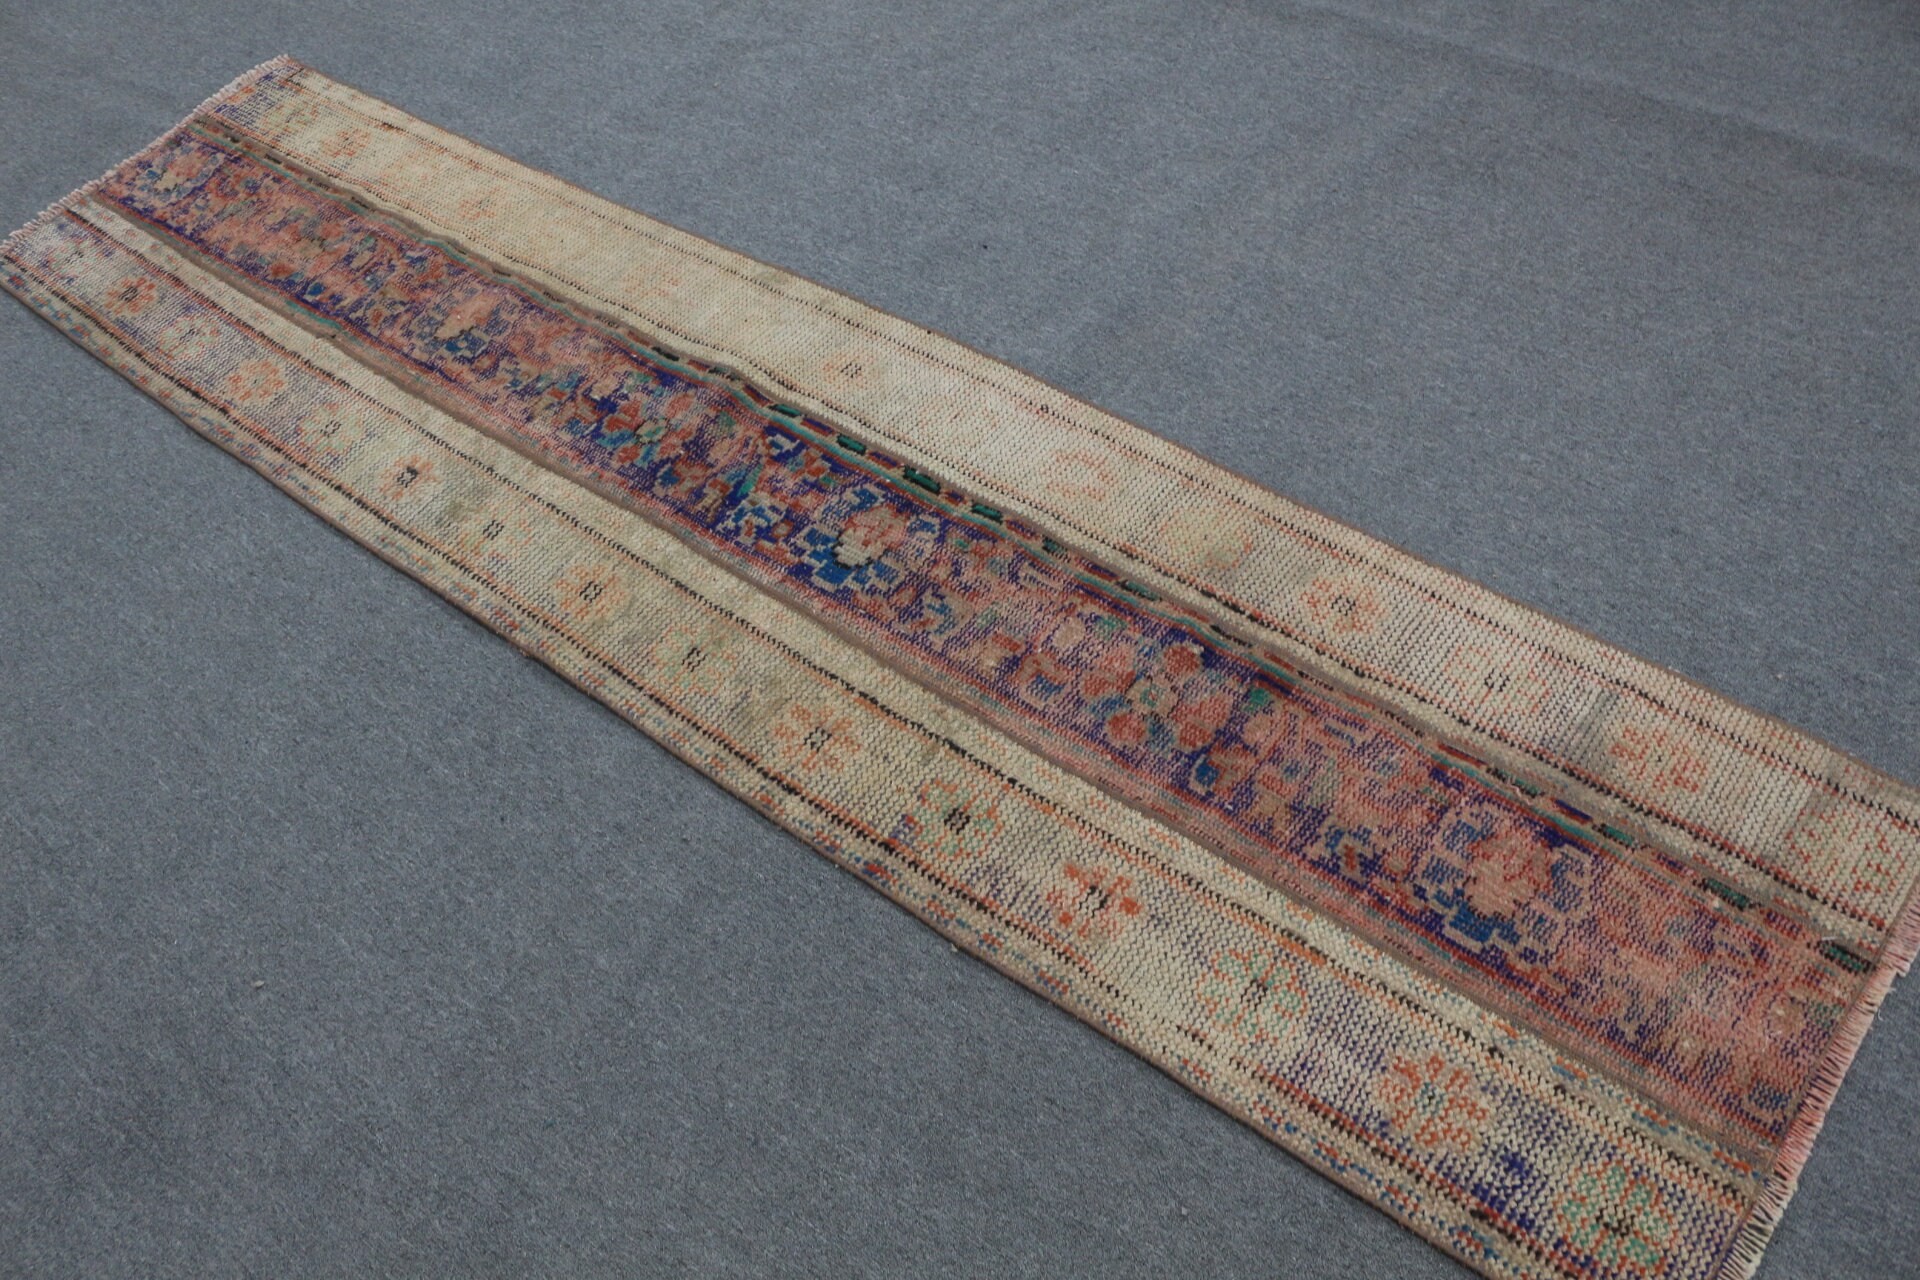 Vintage Rug, 2x8.4 ft Runner Rug, Home Decor Rug, Turkish Rug, Beige Floor Rug, Stair Rugs, Oriental Rug, Hallway Rug, Rugs for Stair